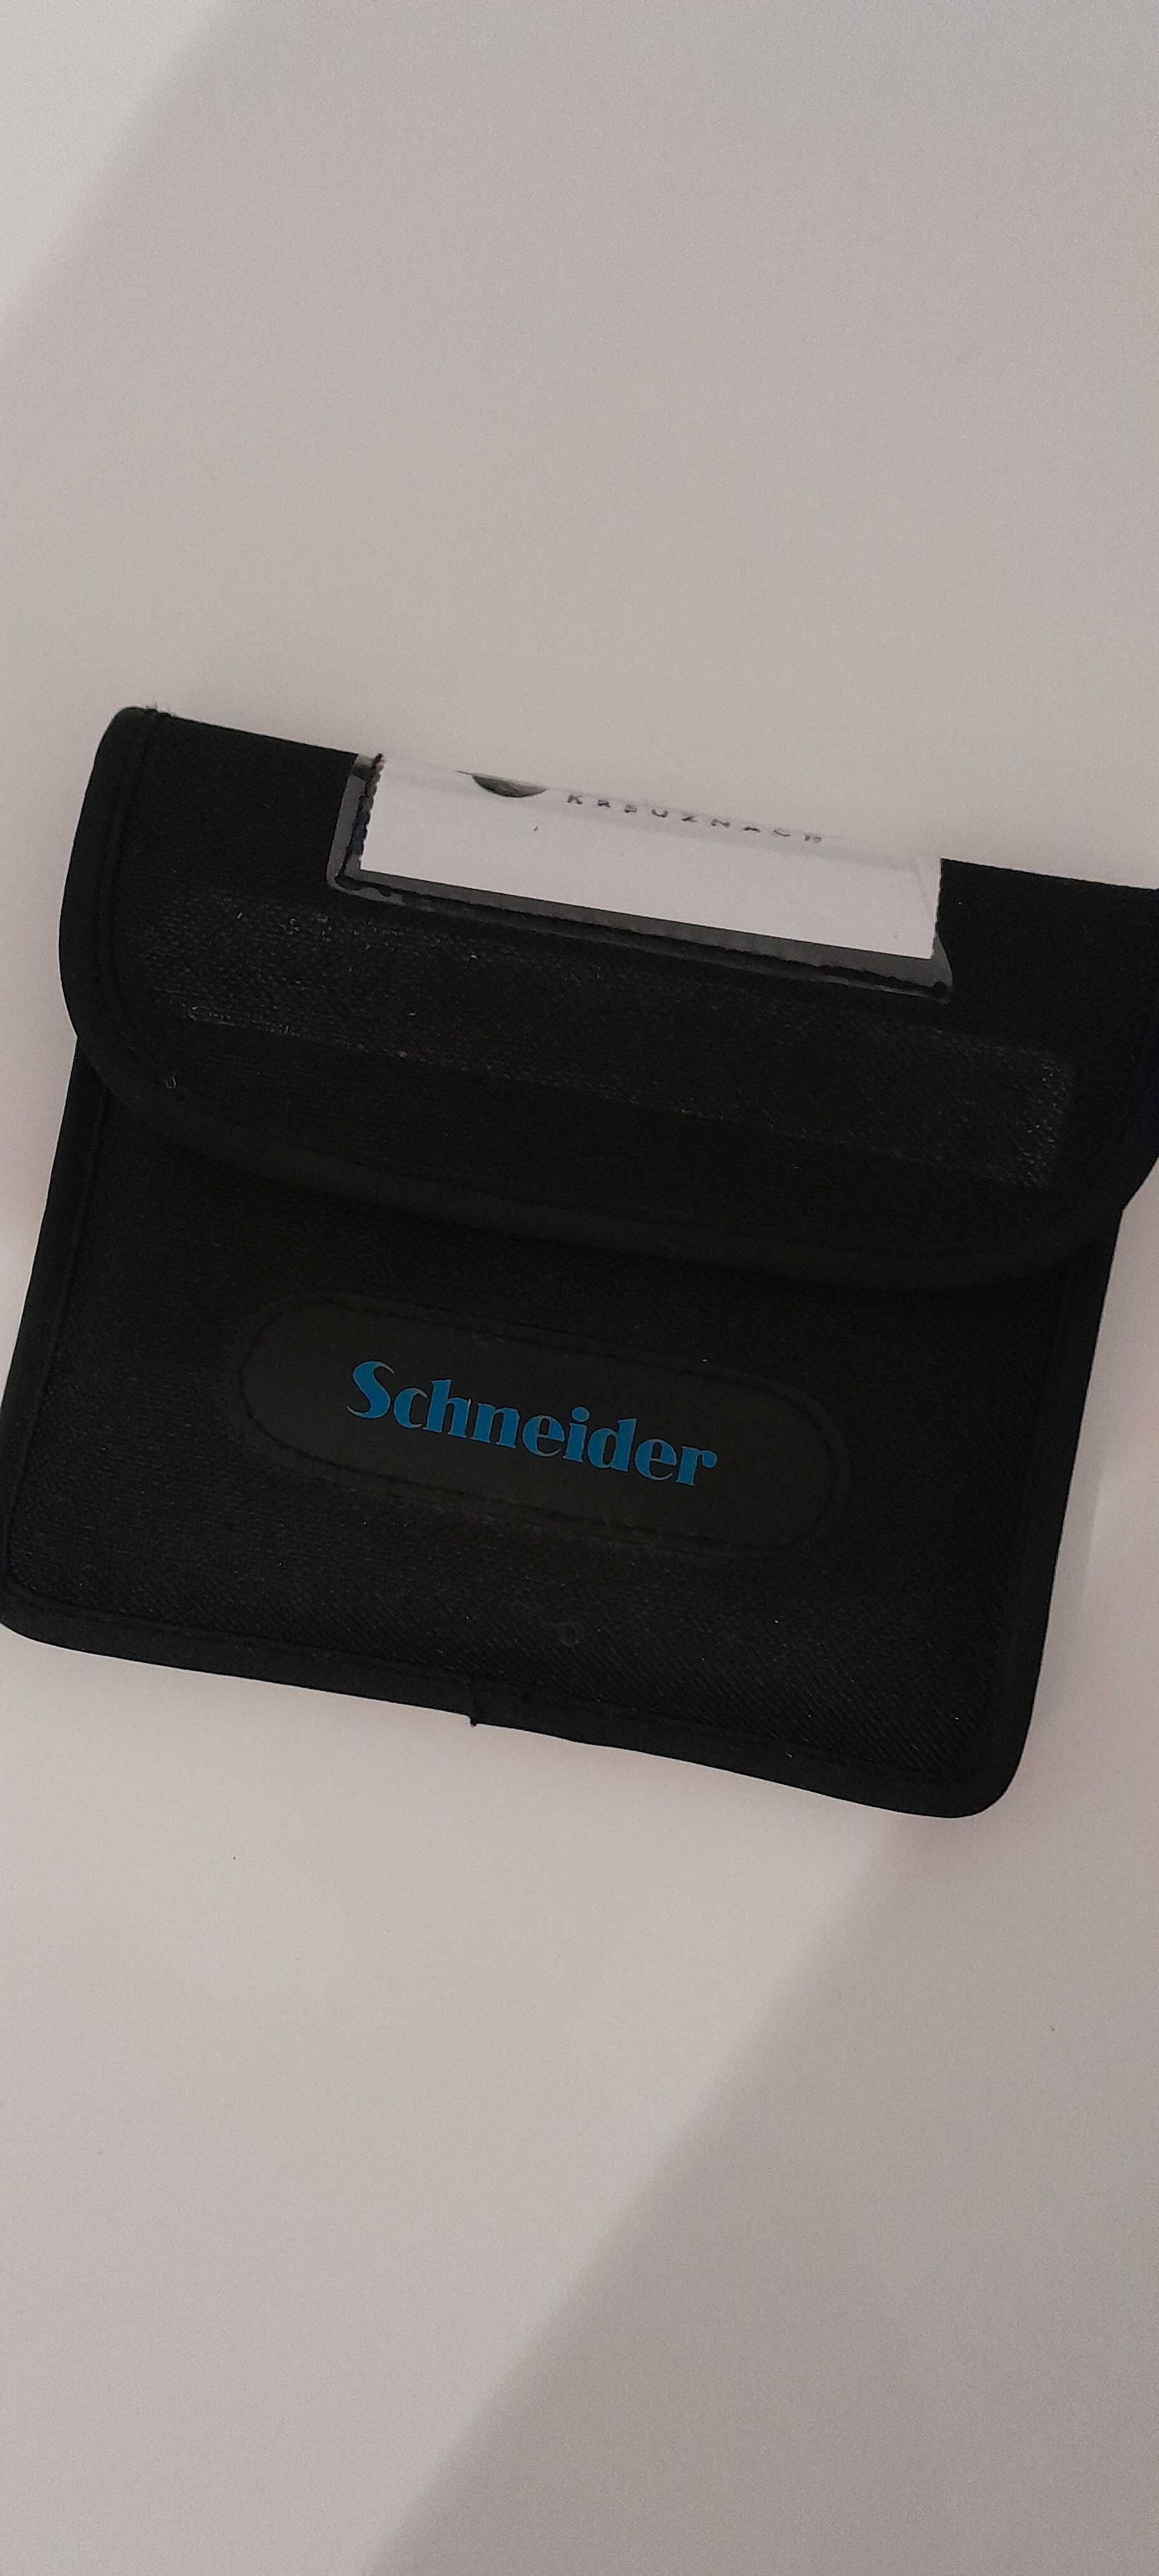 Filtro polarizador 4x4 schneider